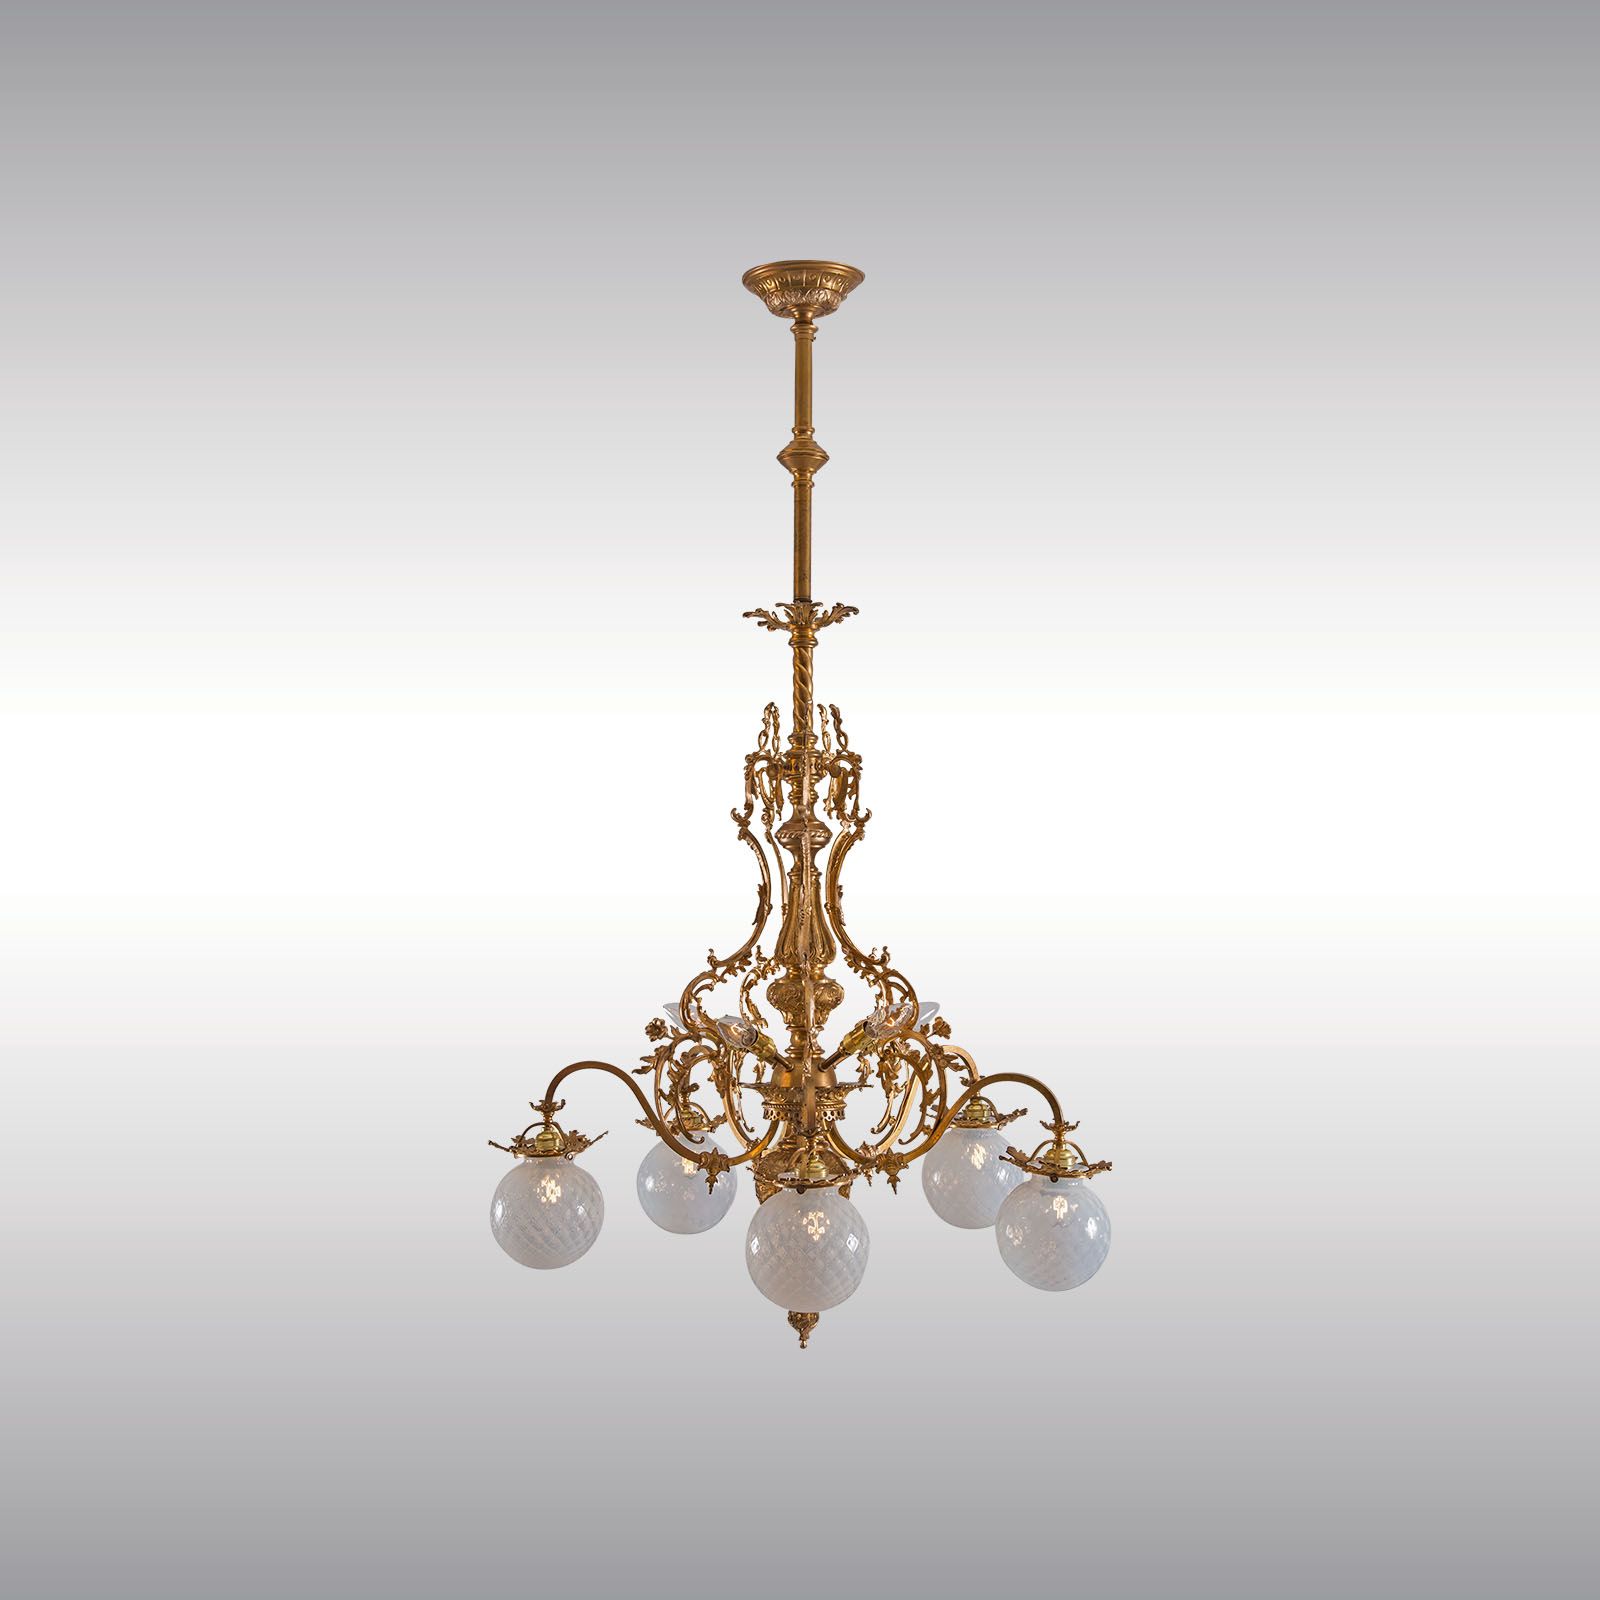 WOKA LAMPS VIENNA - OrderNr.: 60052|Jugendstil - Historistic chandelier - Design: The Ringstrasse-Style in Vienna